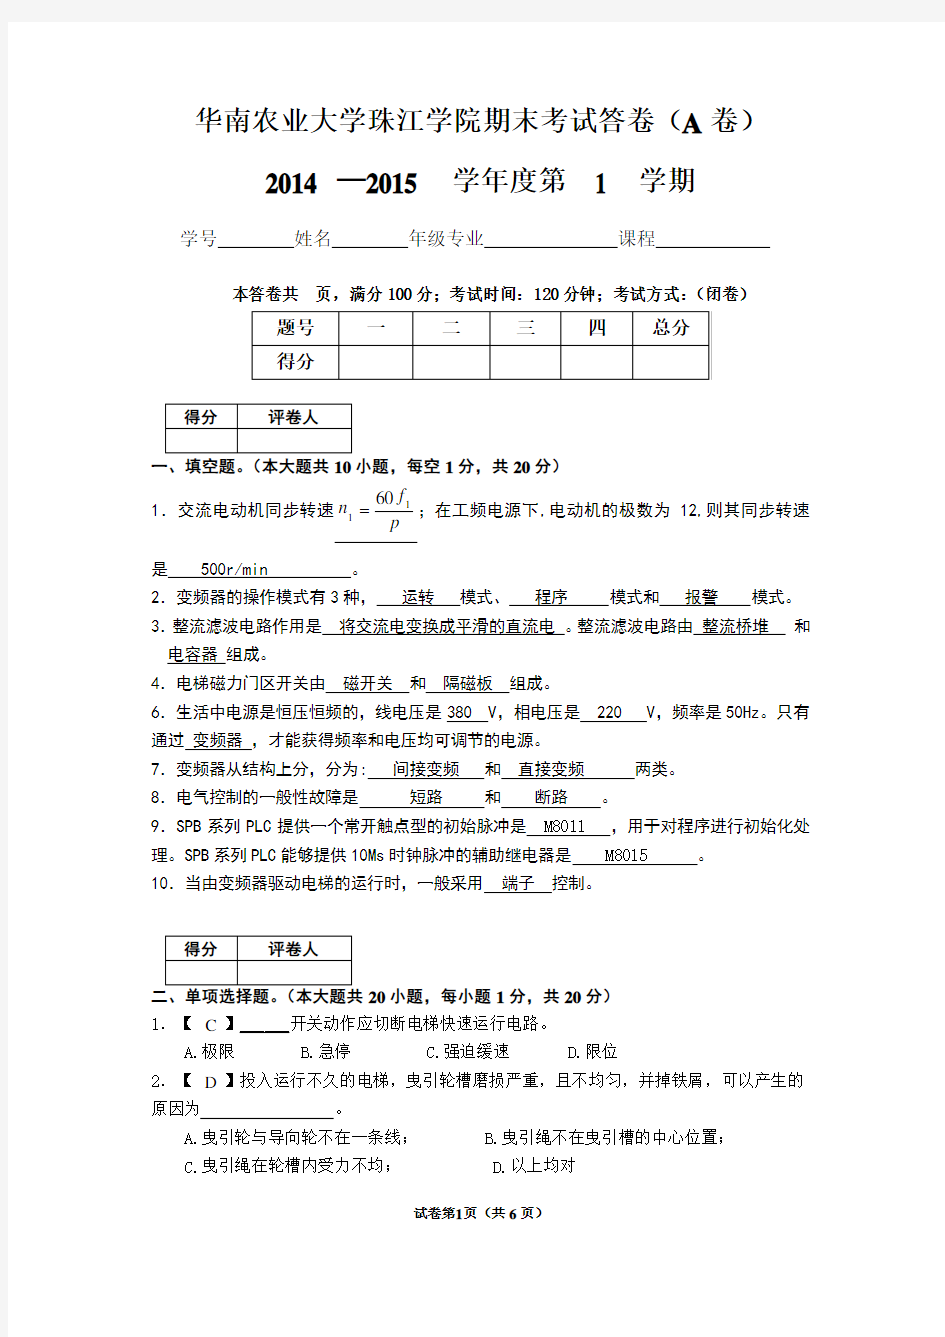 华南农业大学珠江学院电梯自动控制技术期末考试答案